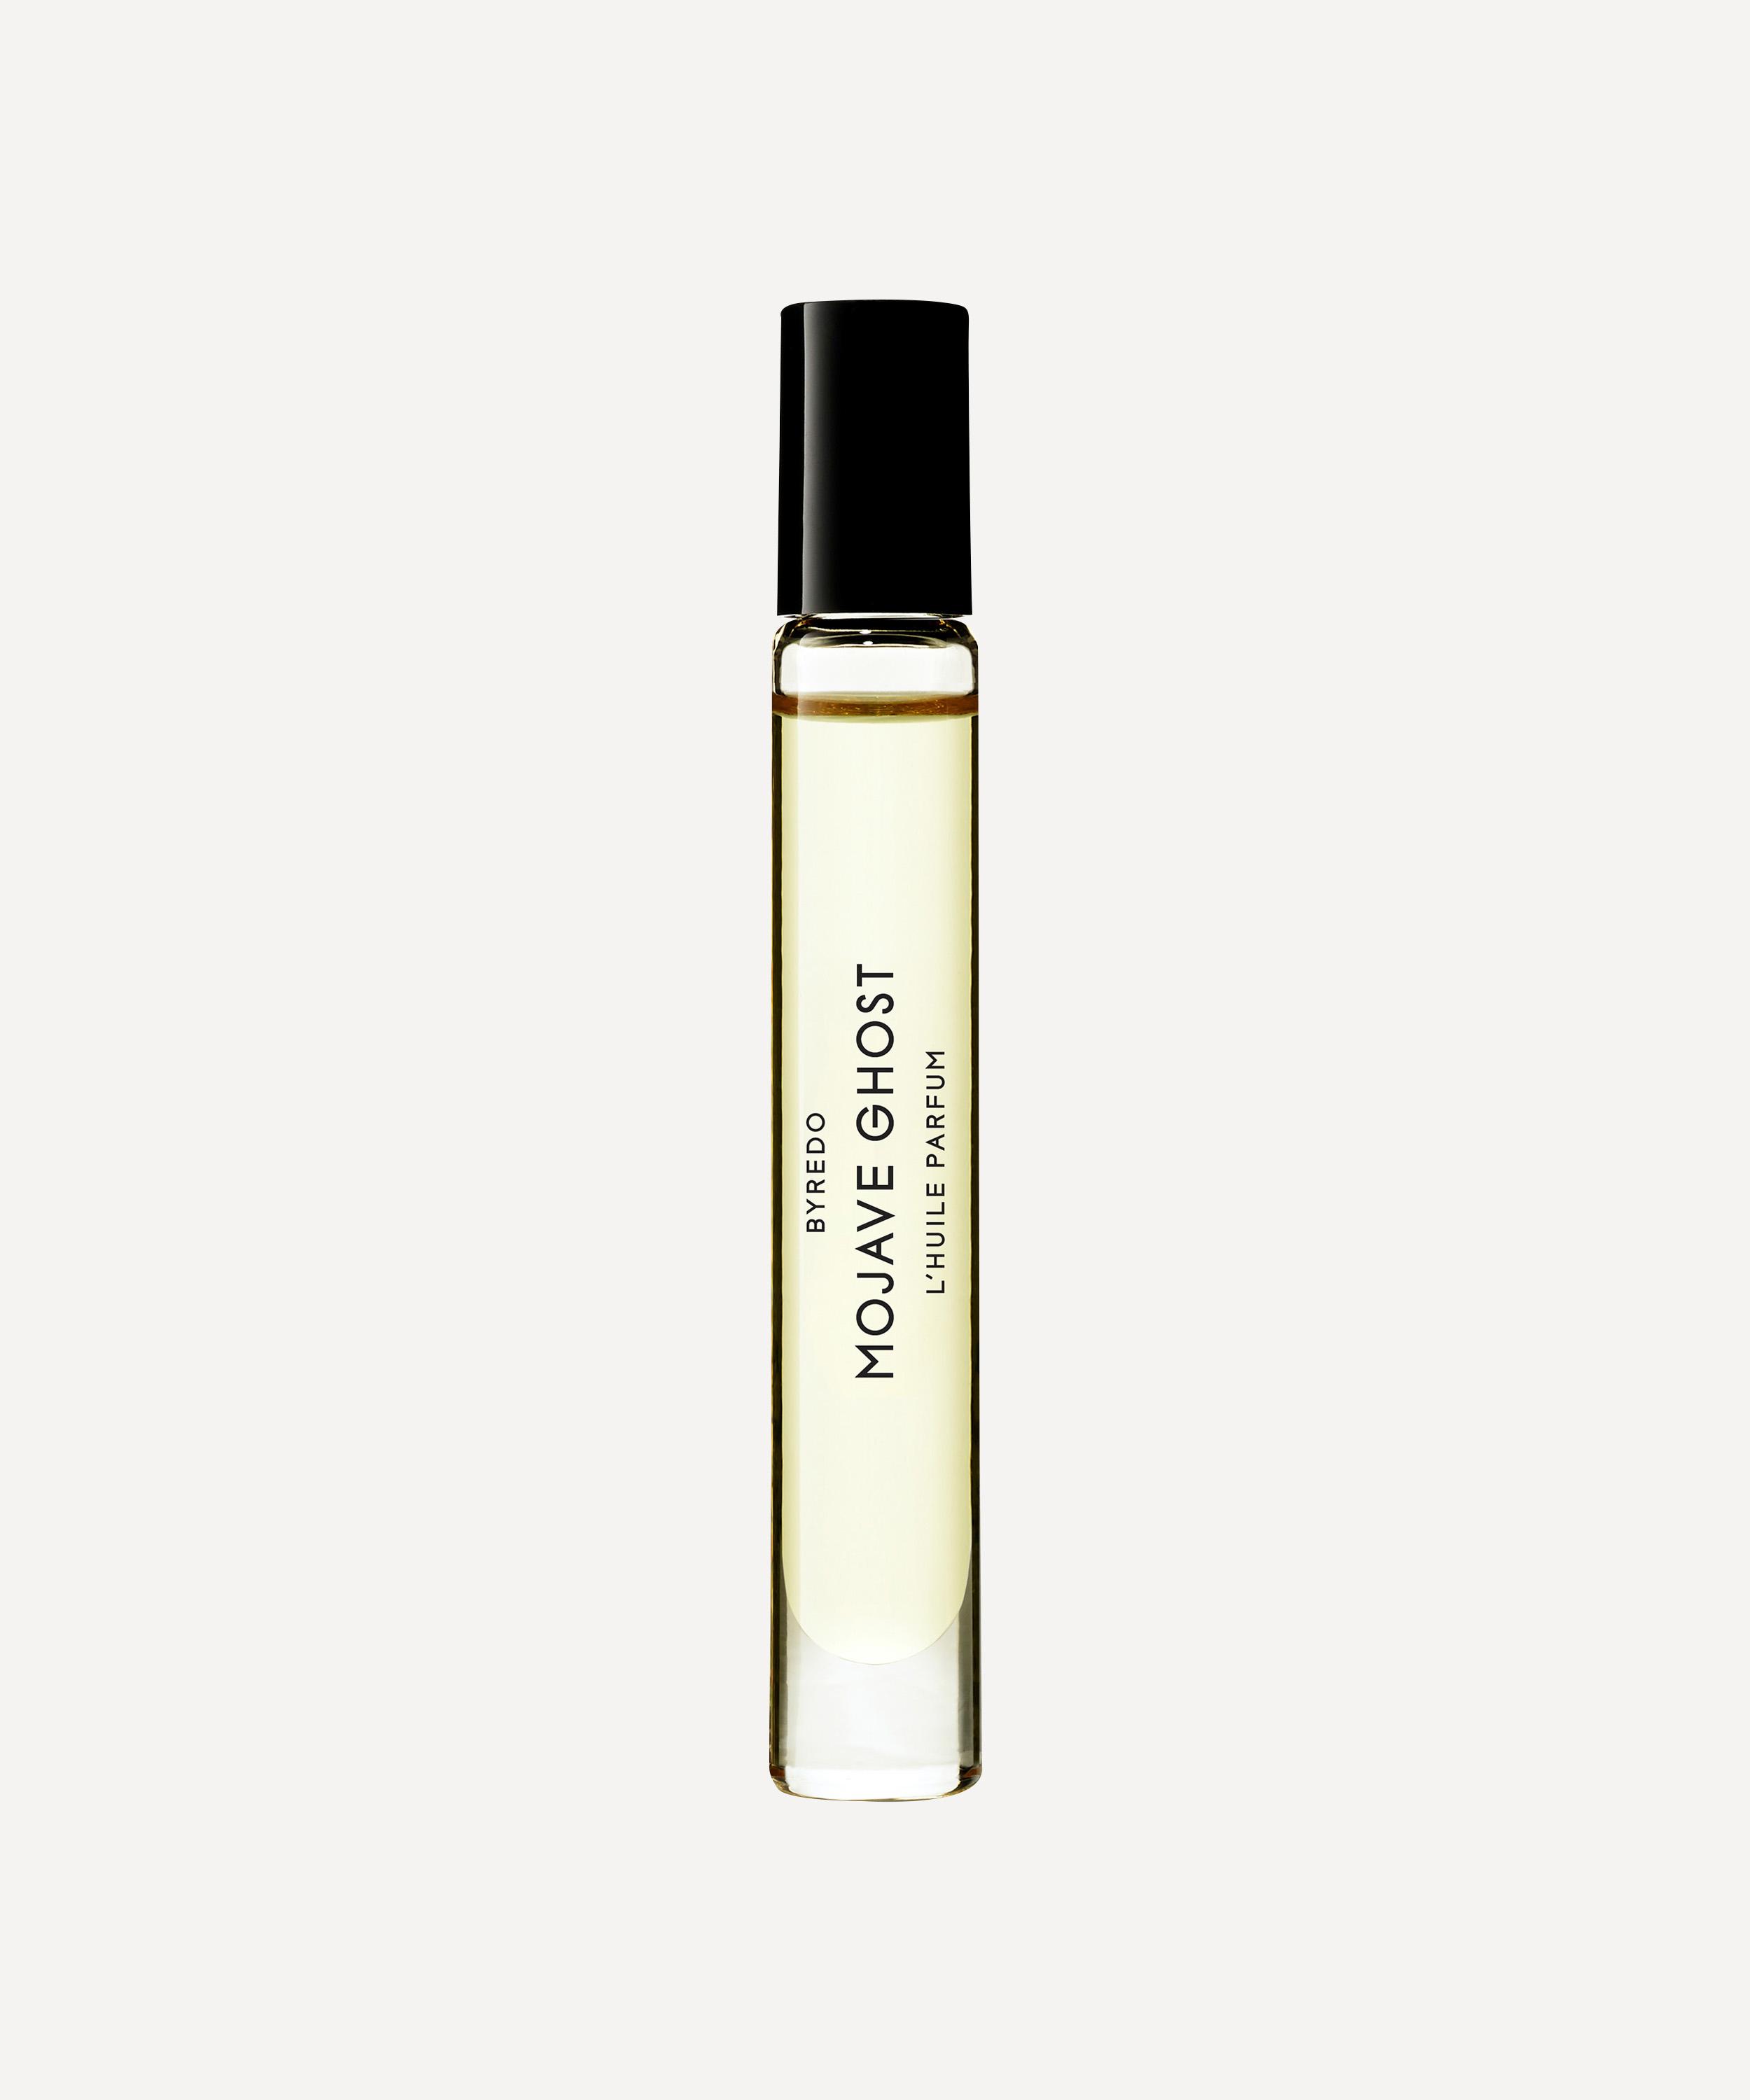 Byredo Mojave Ghost Roll-on Perfume Oil 7.5ml - Luxury Unisex Perfume